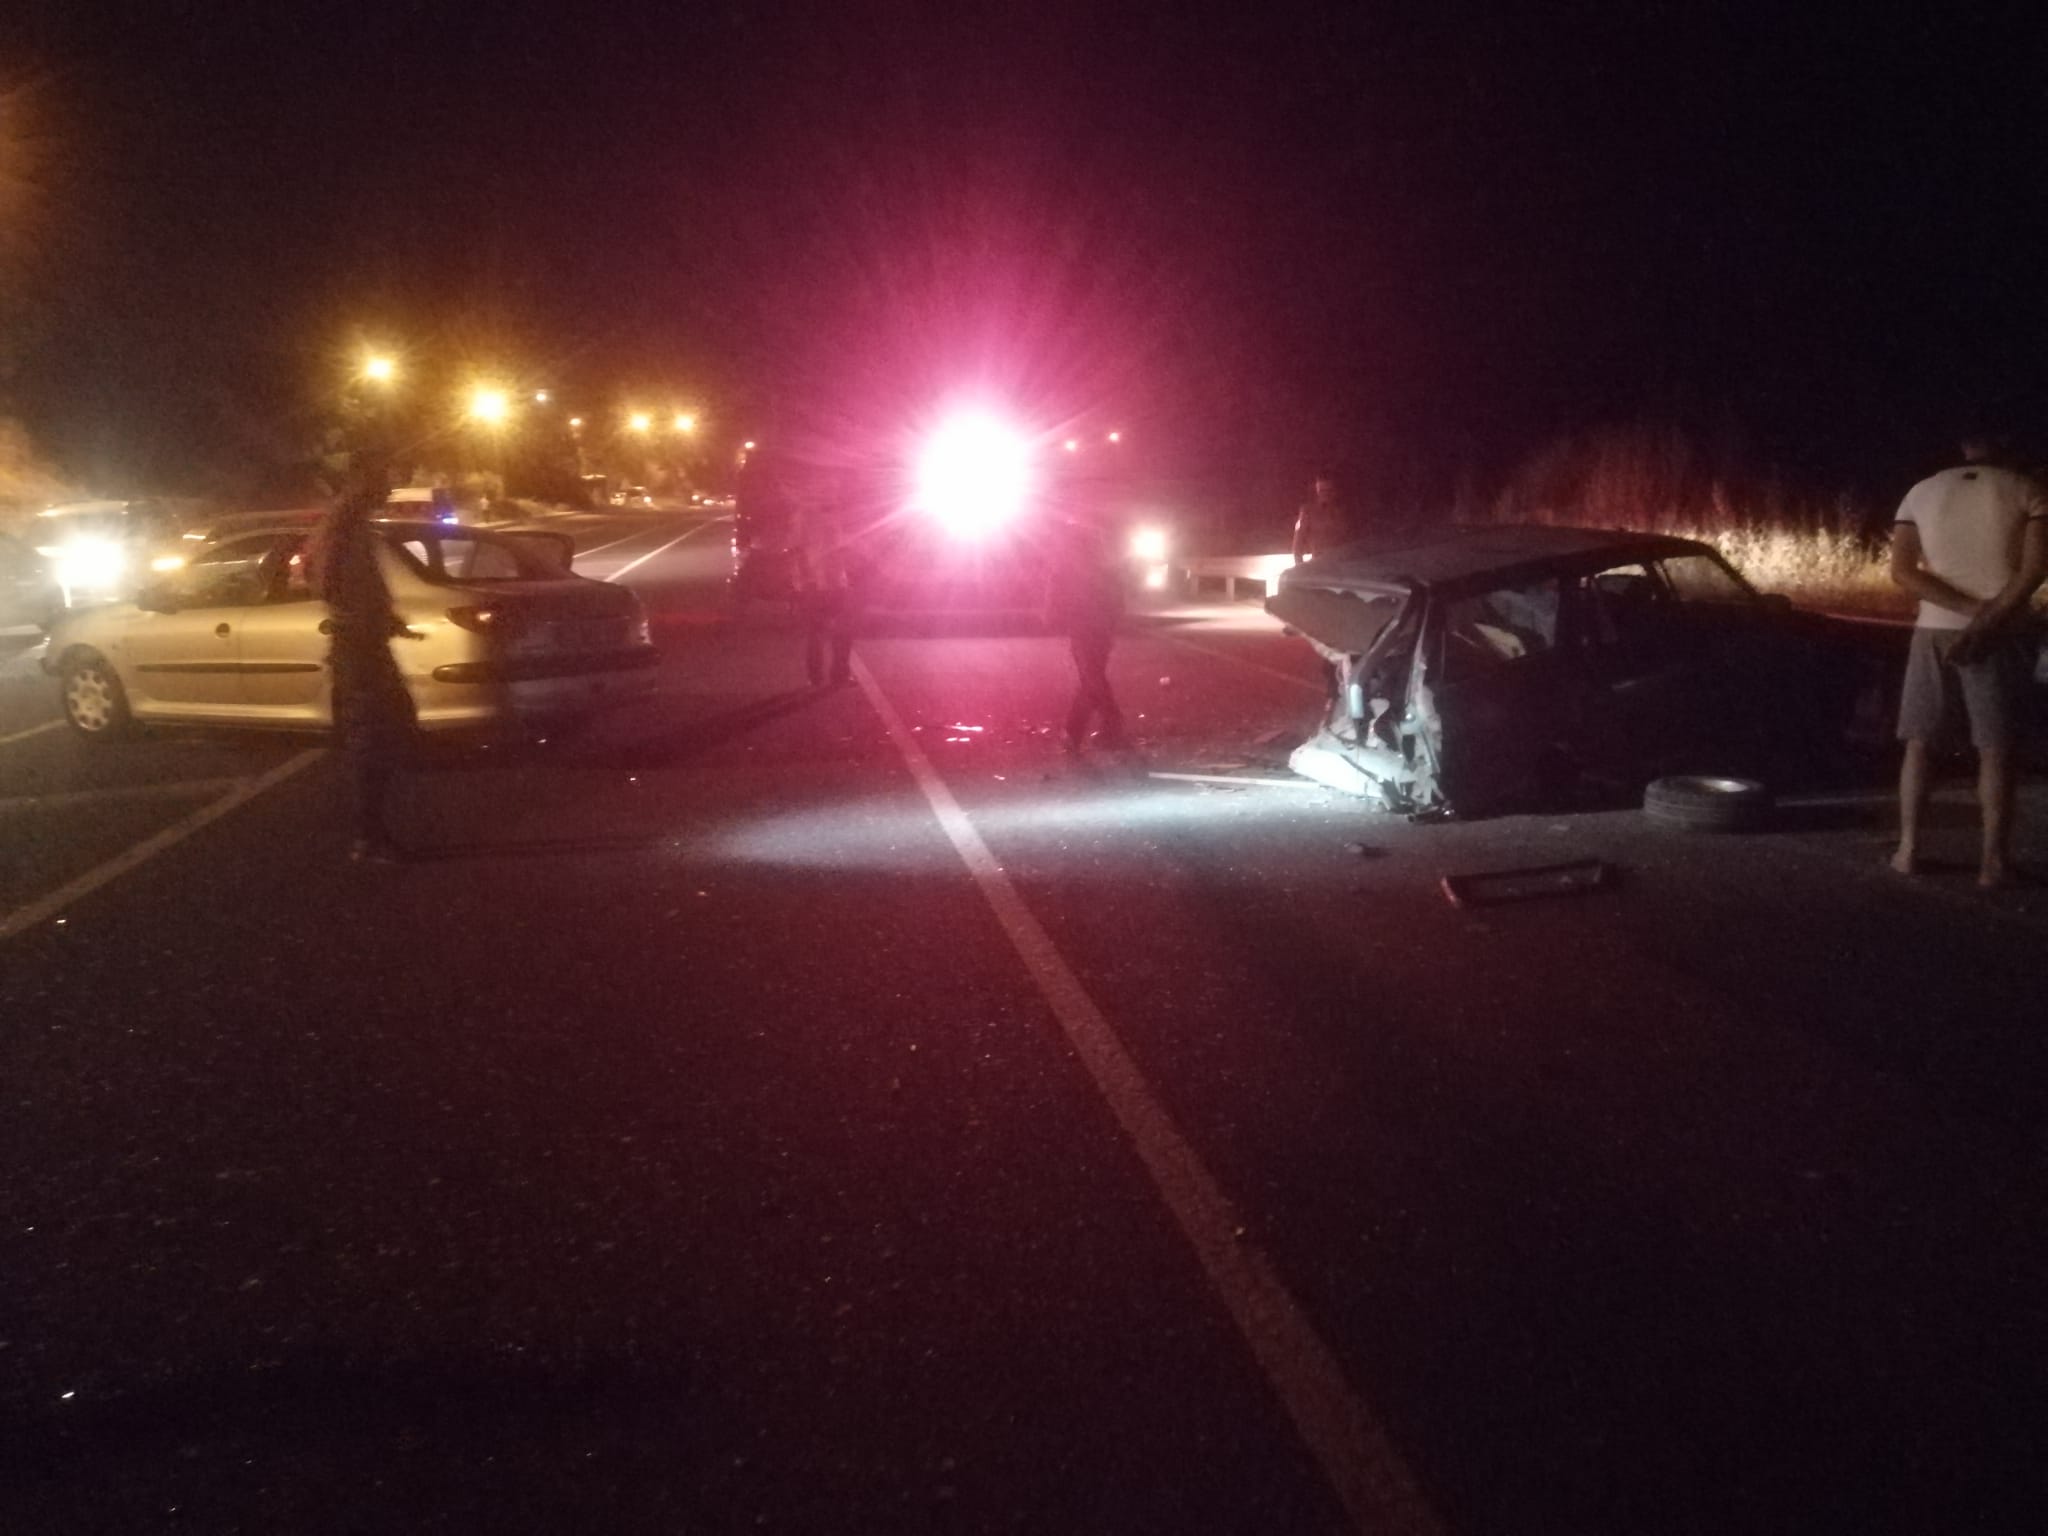 Darende yakınlarında gece meydana gelen trafik kazasında 1 kişi yaralanırken, araçlarda büyük hasar meydana geldi.